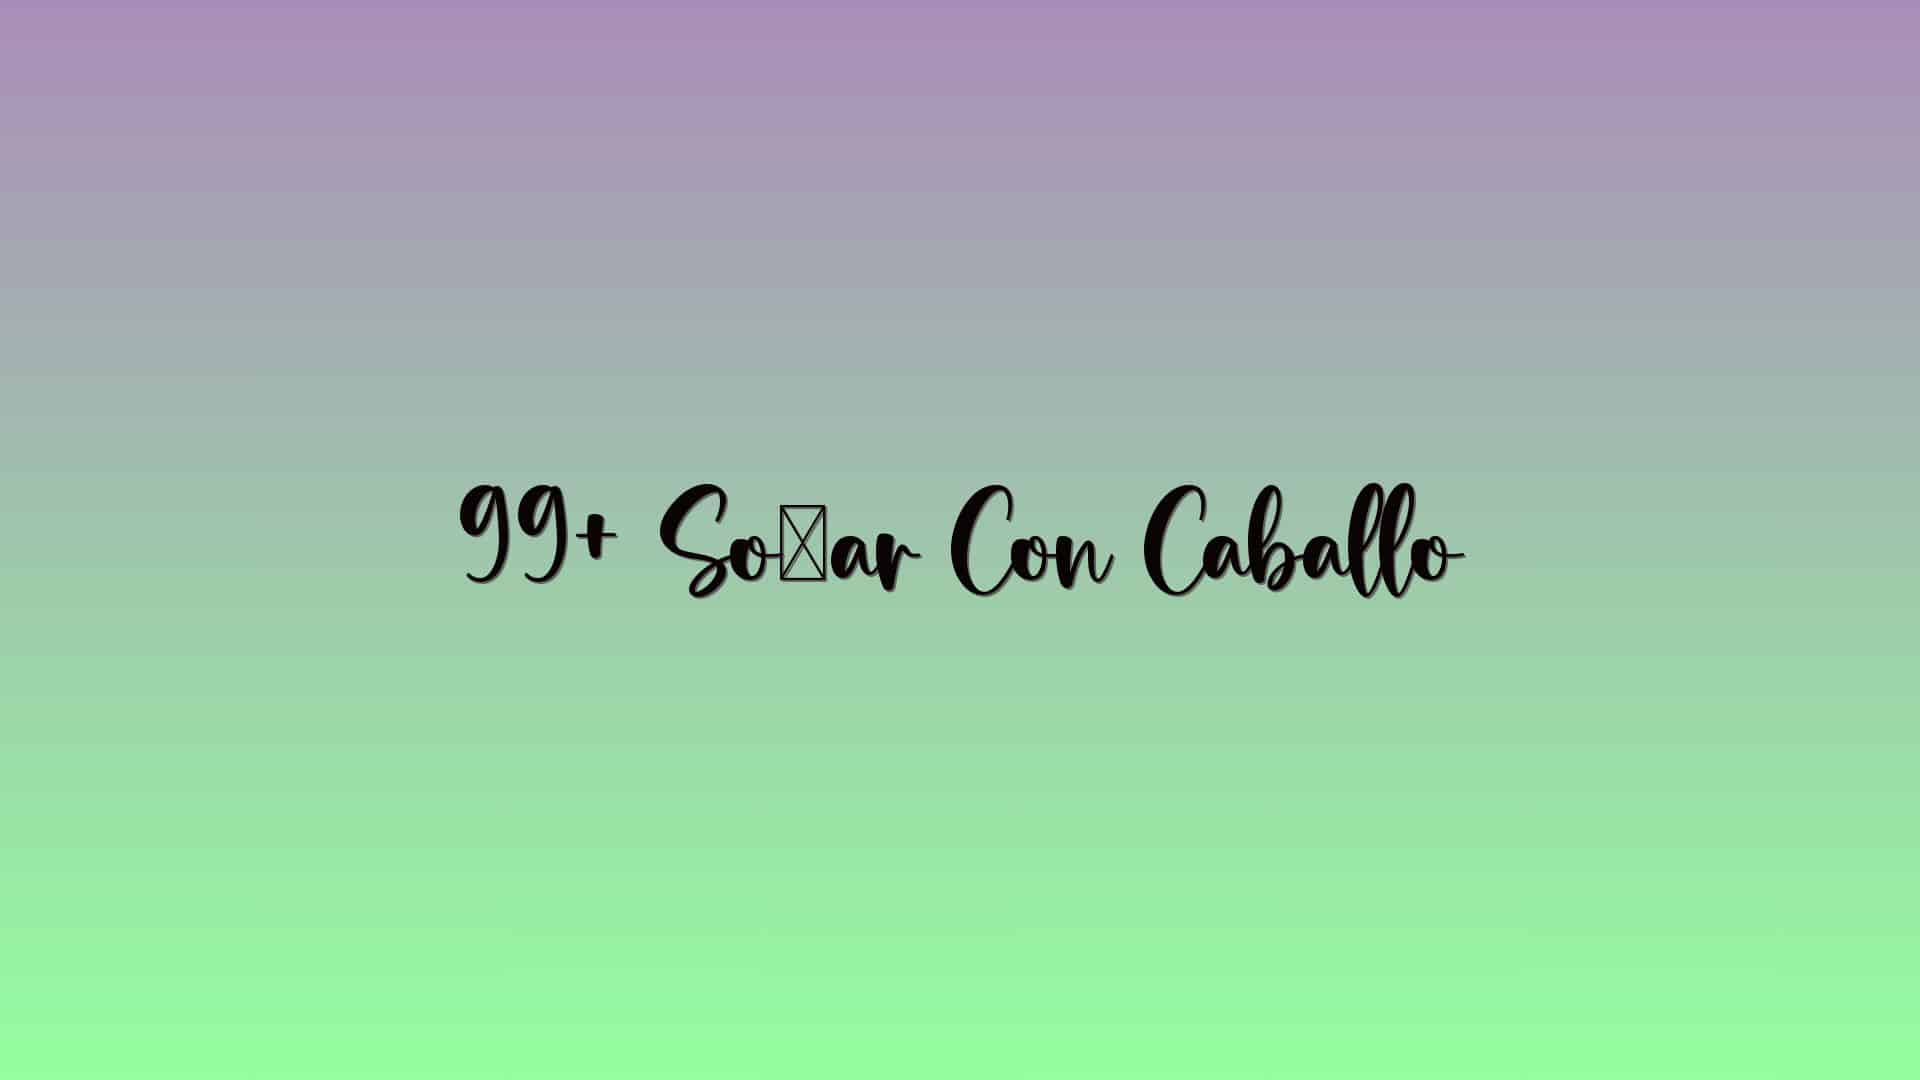 99+ Soñar Con Caballo